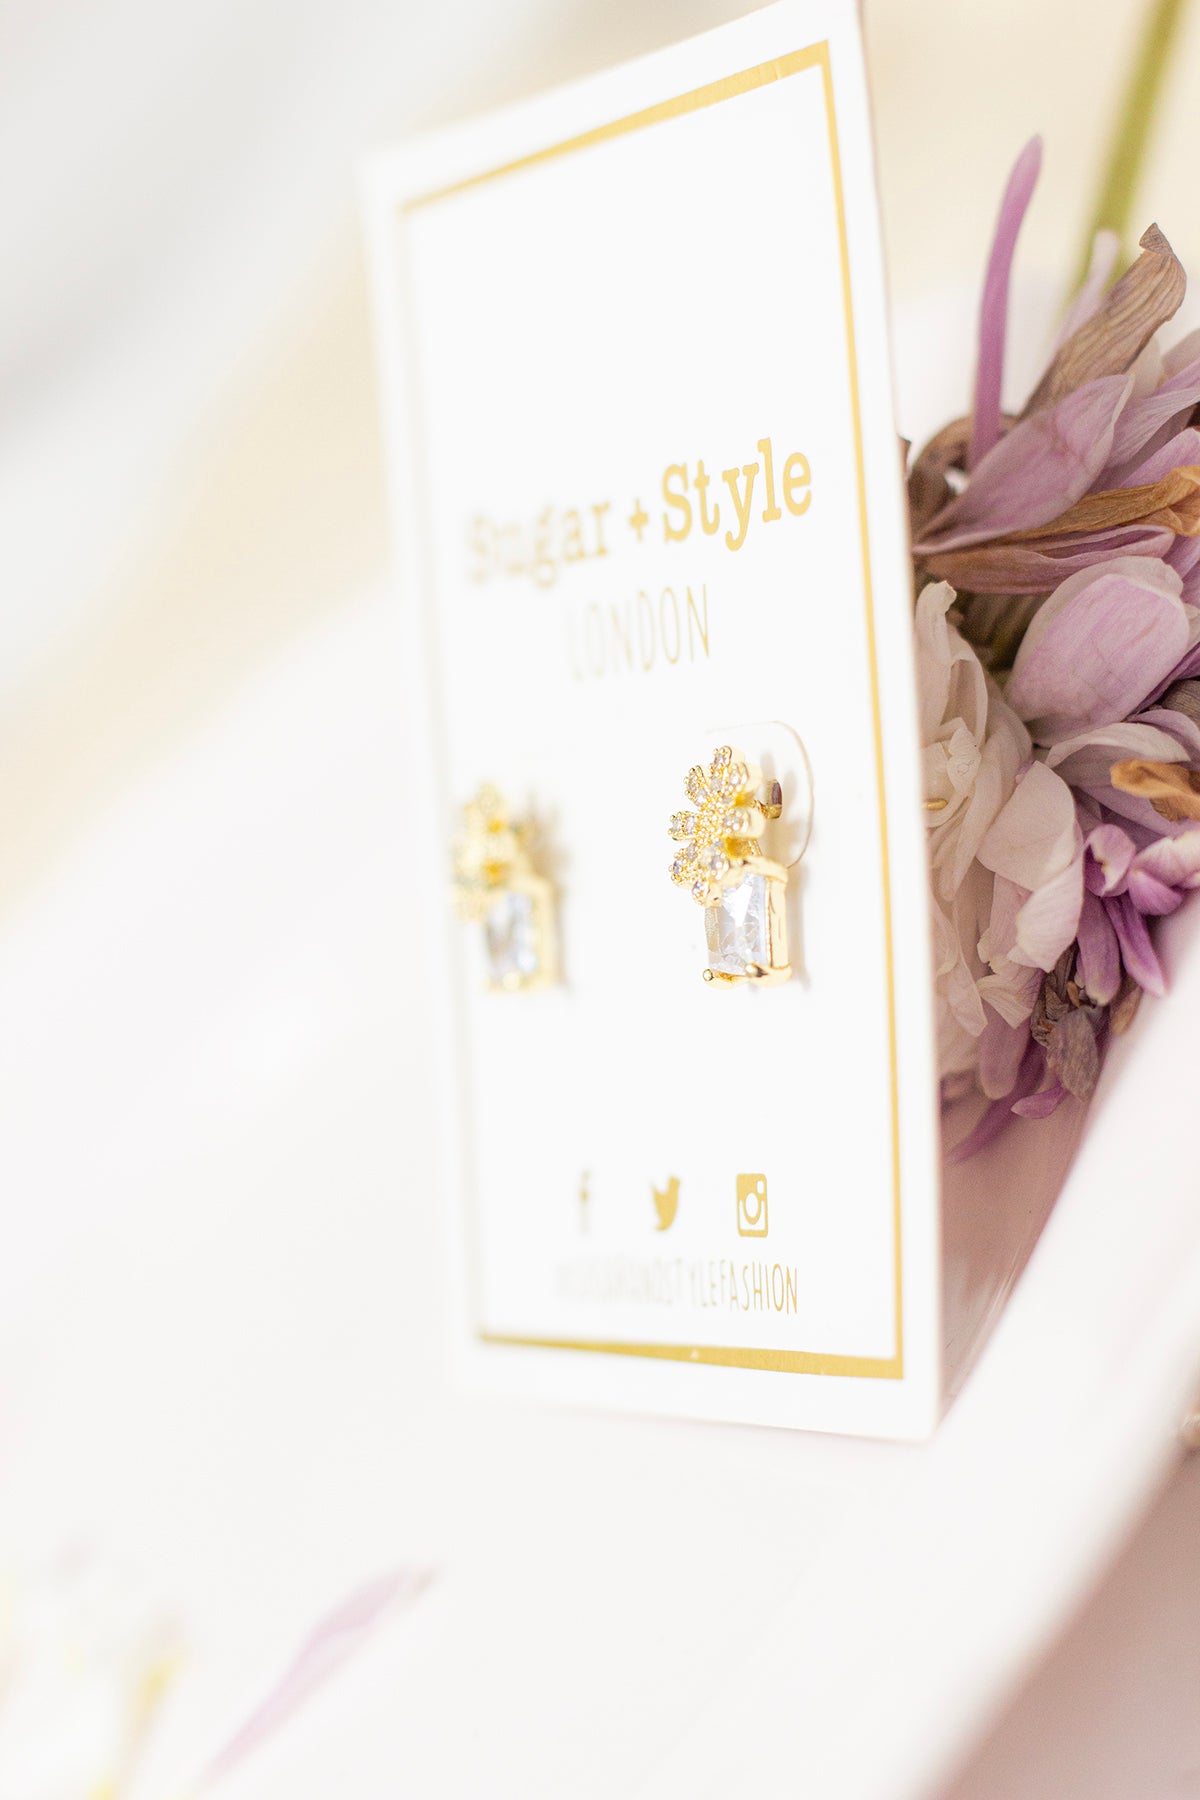 Floral Stud Gem Earrings - Sugar + Style